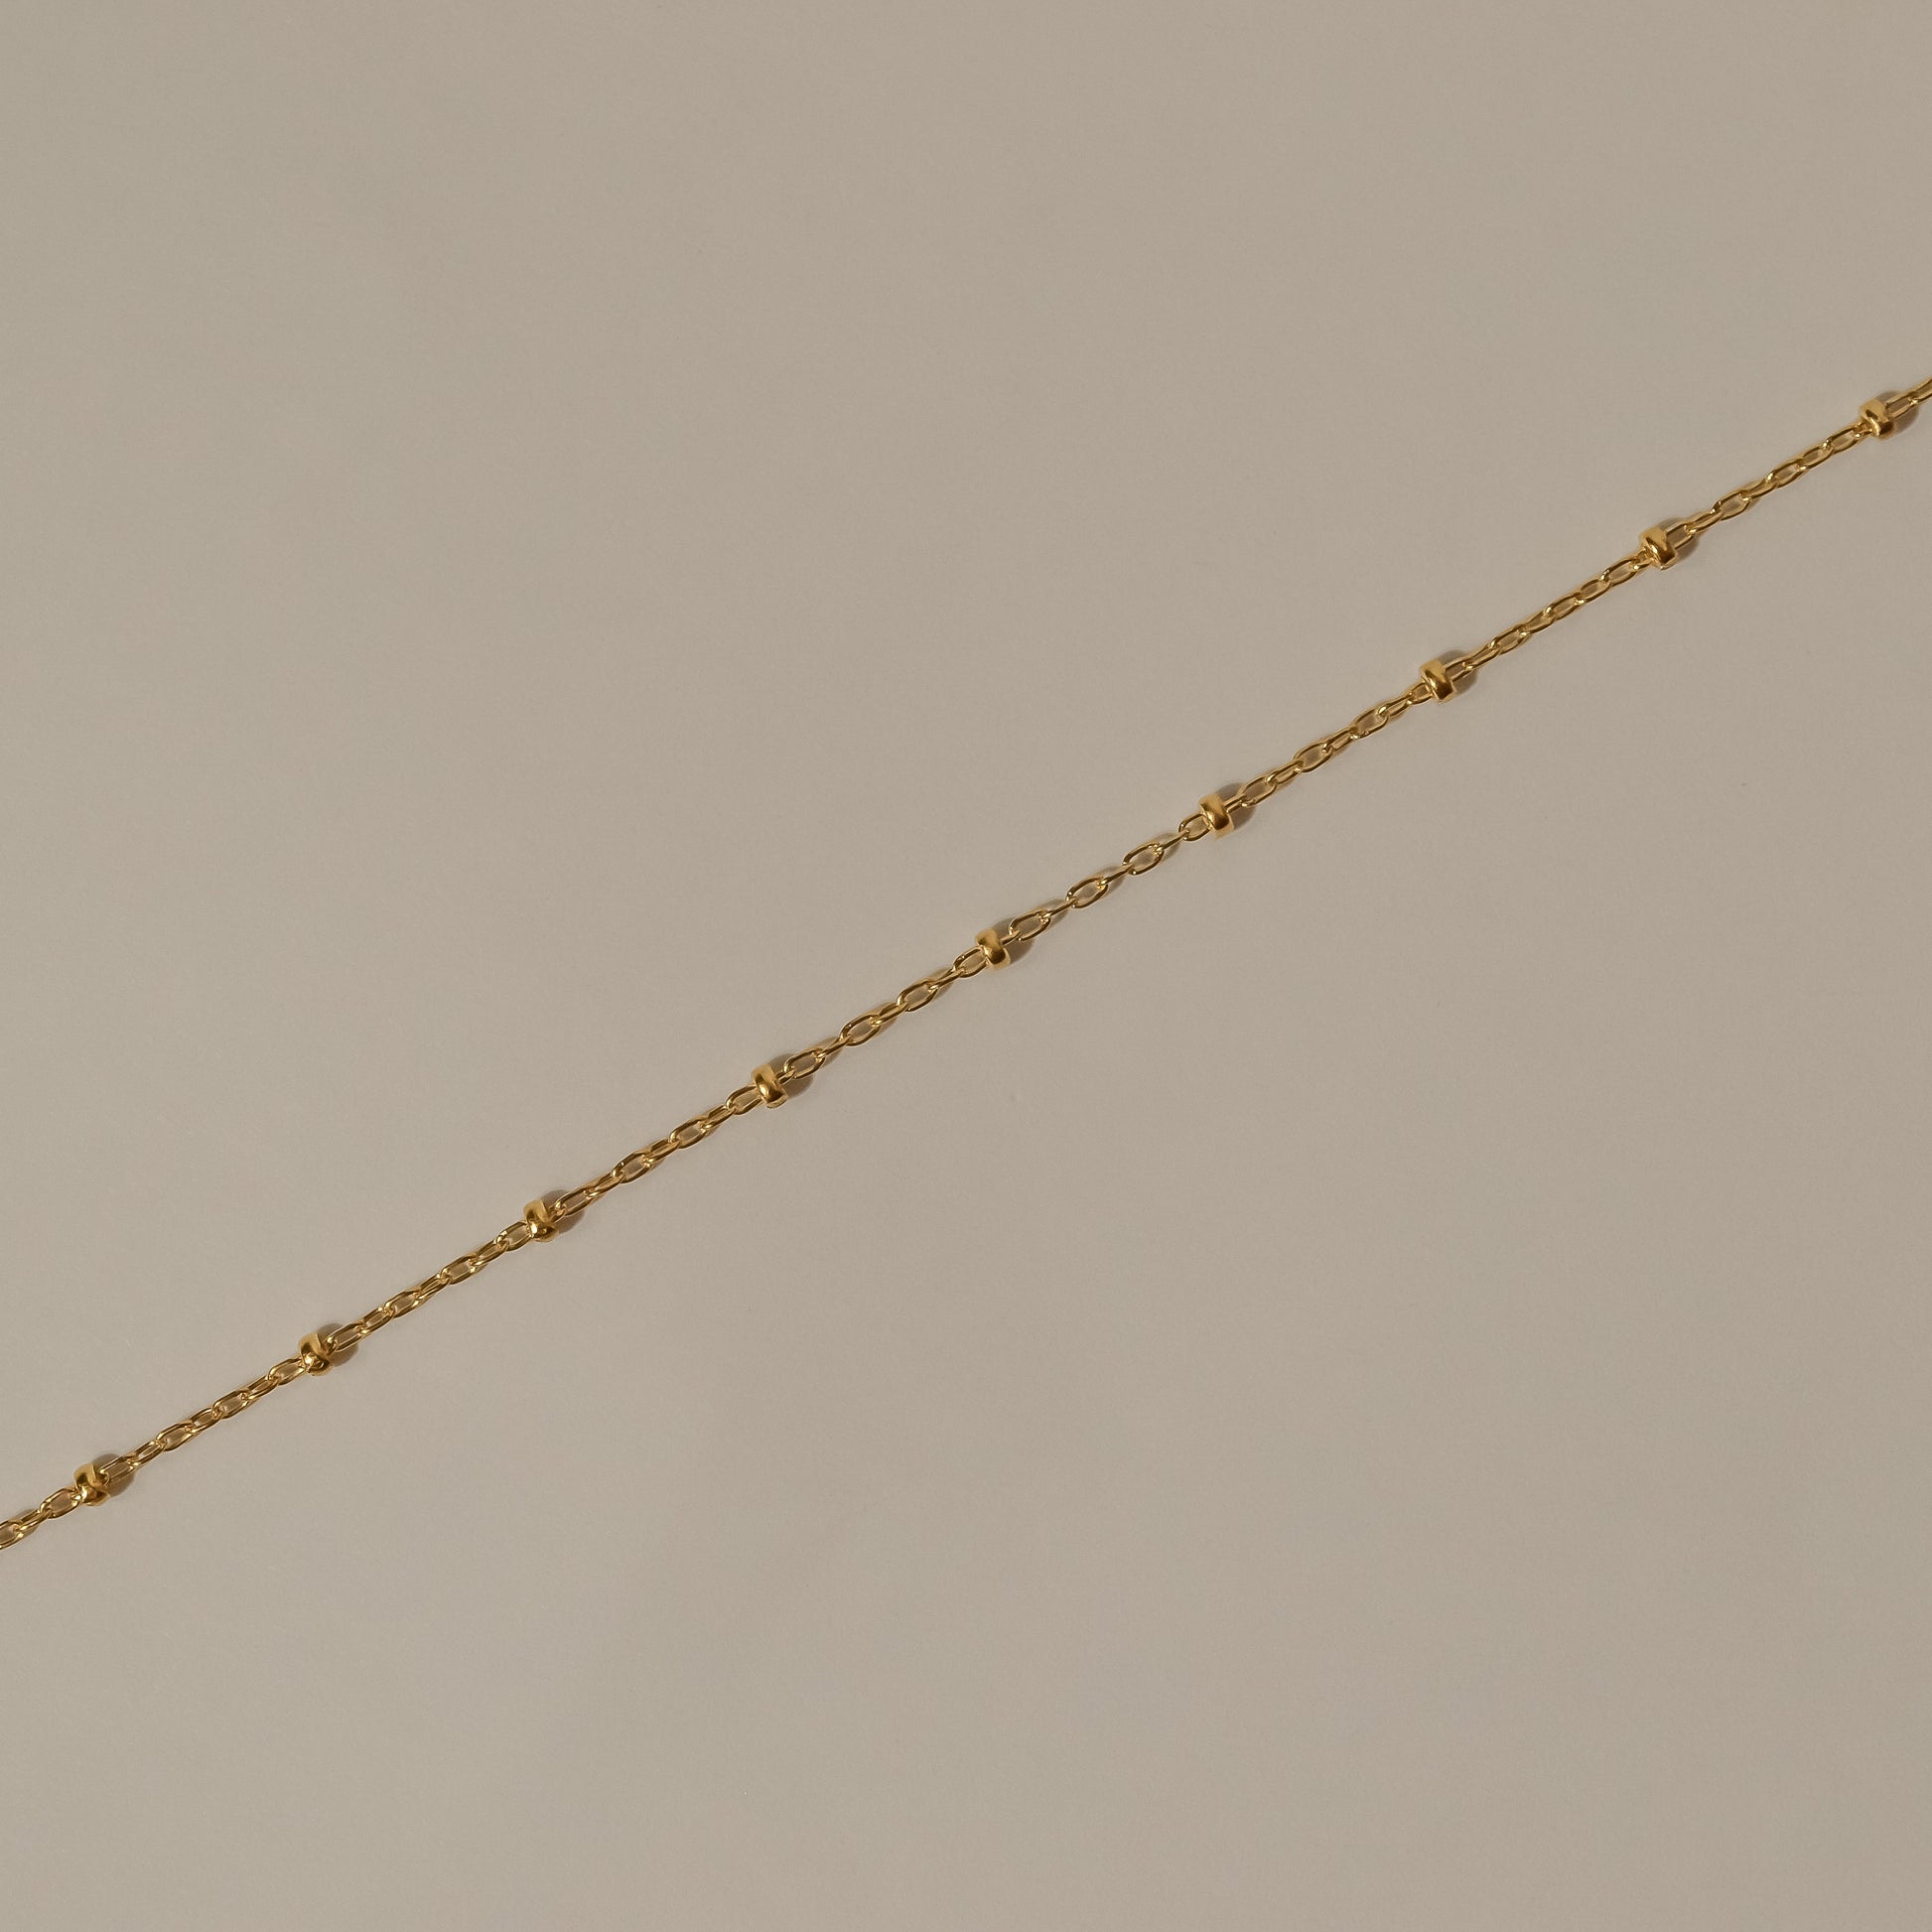 Satellite gold  necklace, simple, elegant 